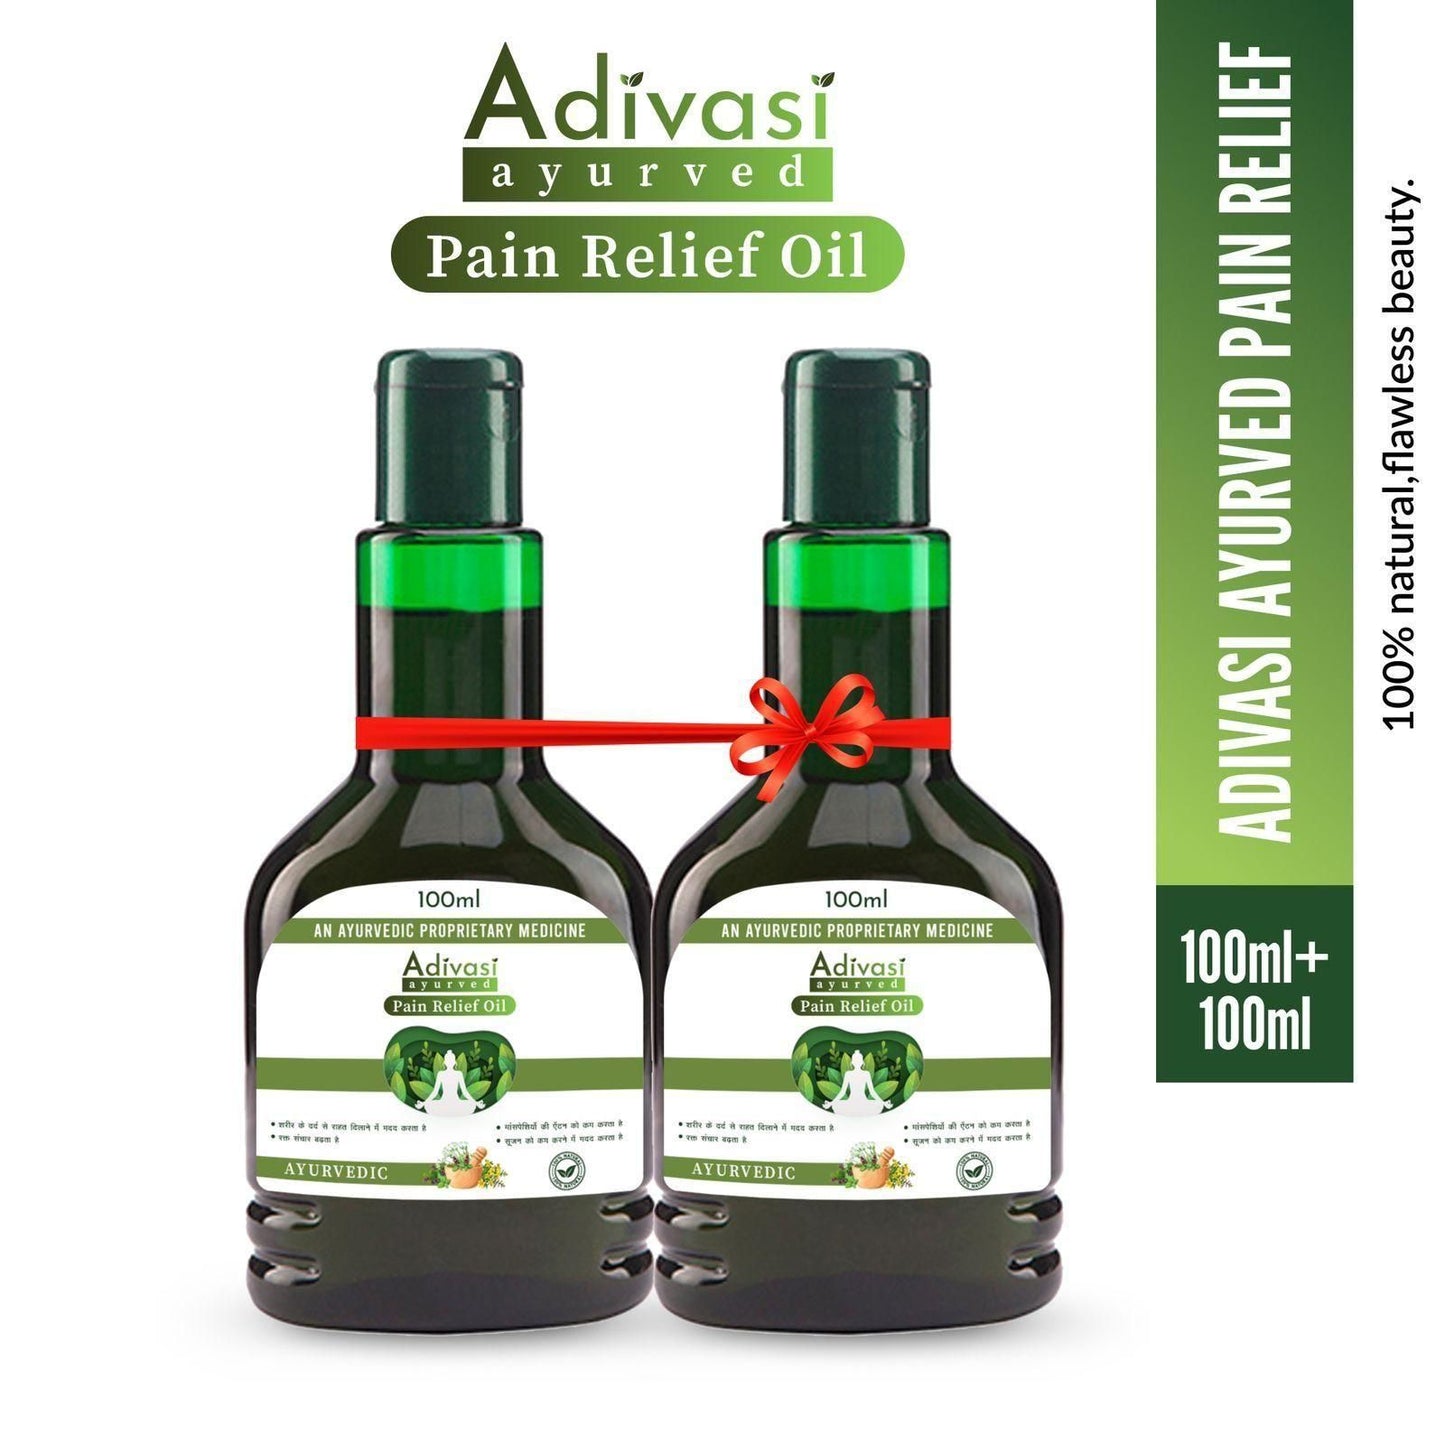 ORIGINAL™ ADIVASI PAIN RELIEF OIL (BUY 1 GET 1 FREE) (PACK OF 2)